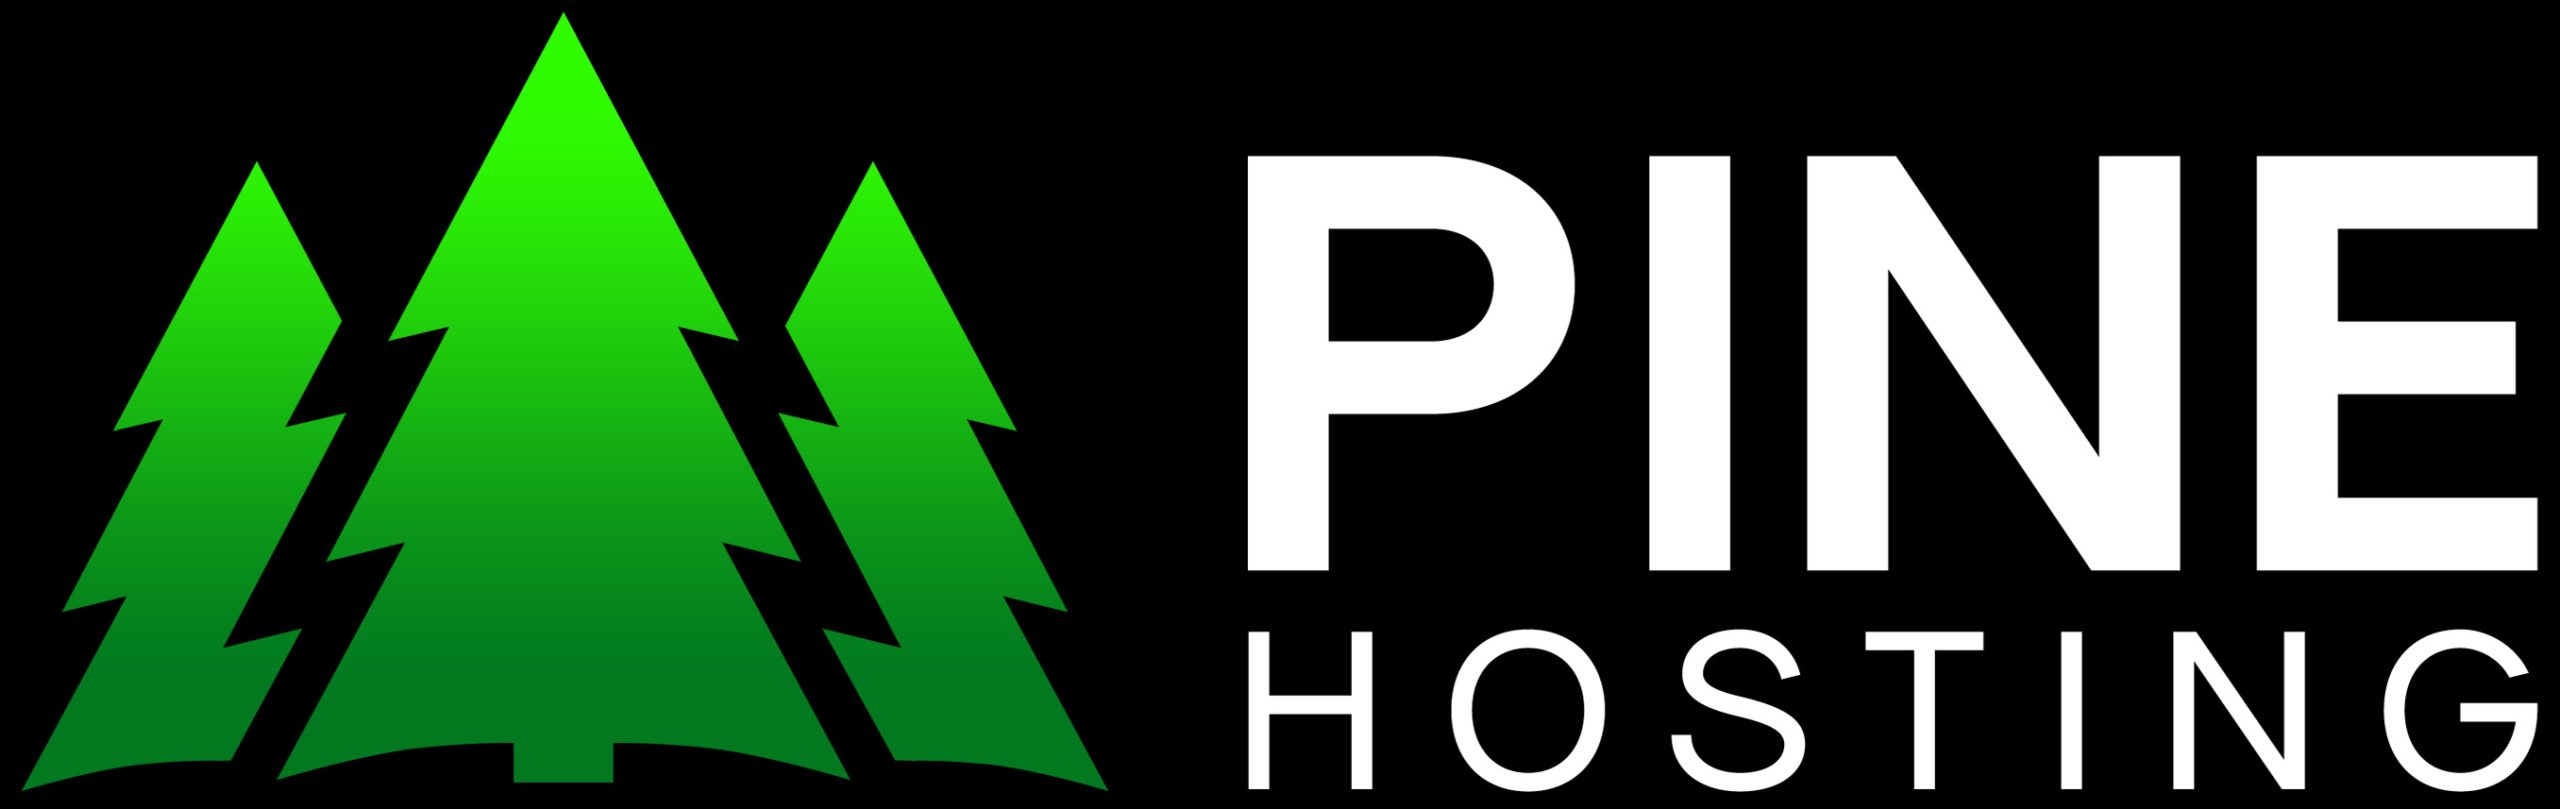 Pine Net hosting Logo